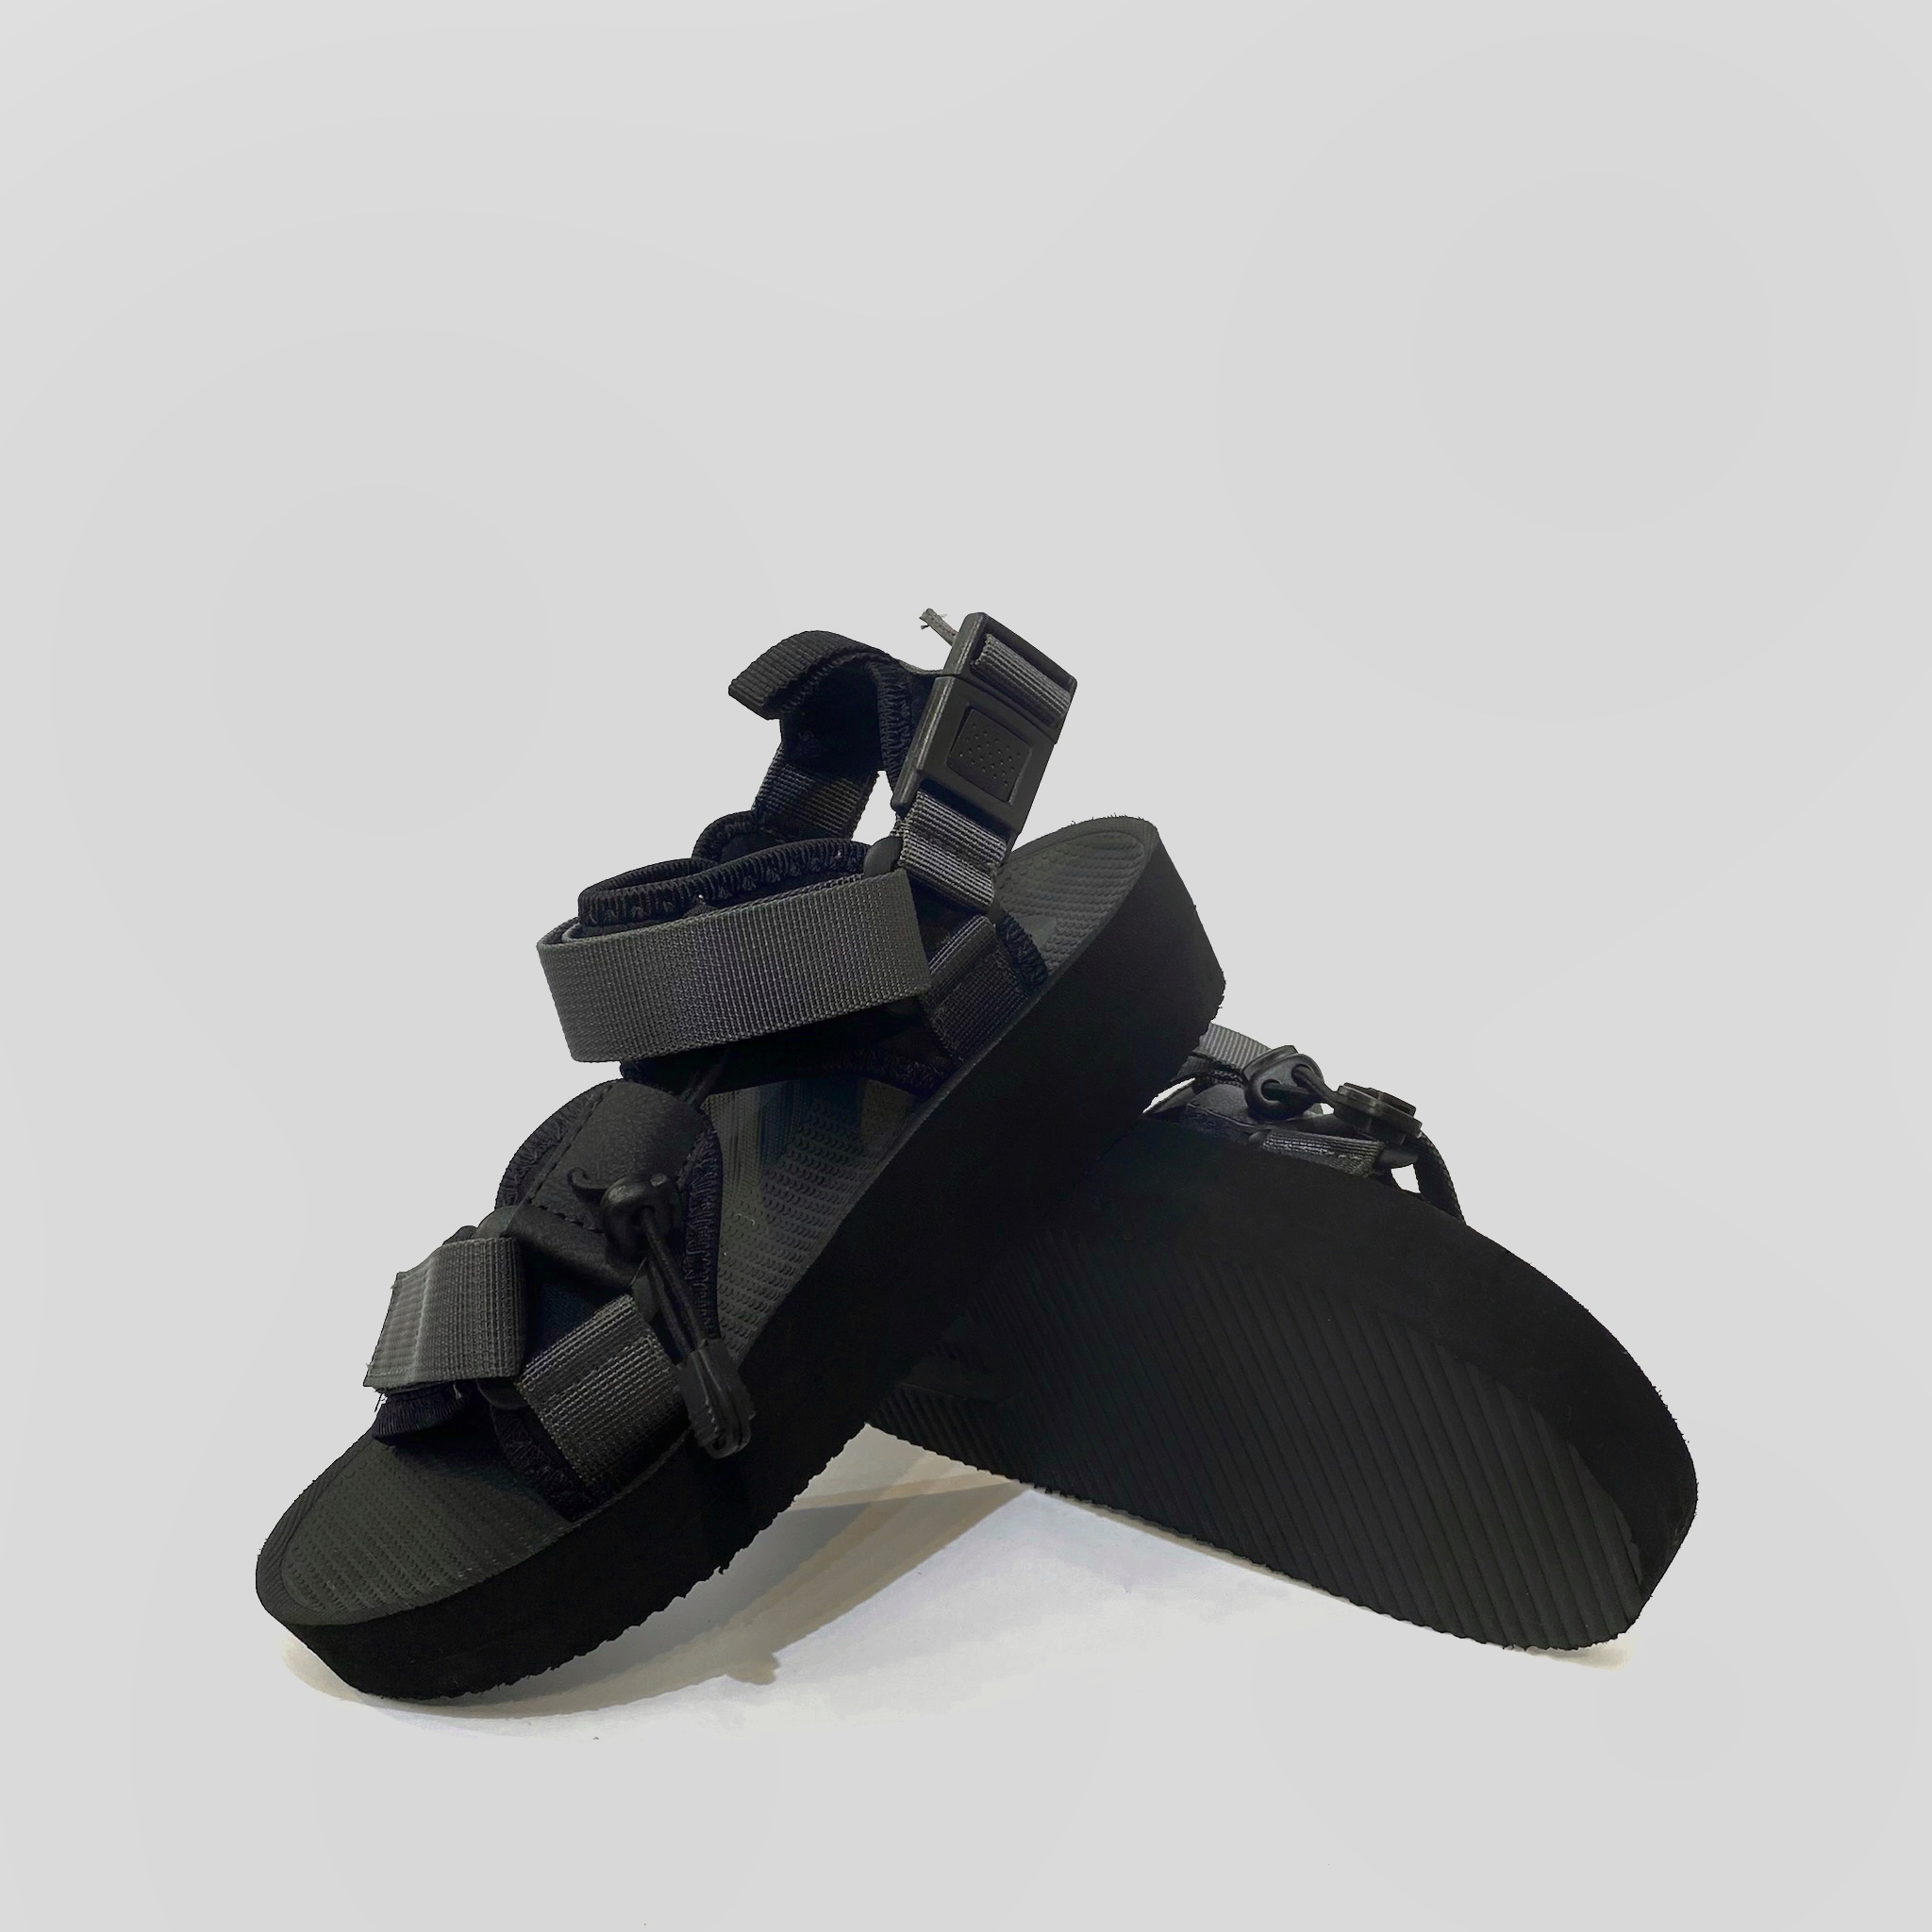 Giày Sandal Nữ The Bily 01W Quai Chéo Dây Rút - Màu Xám BL01WX